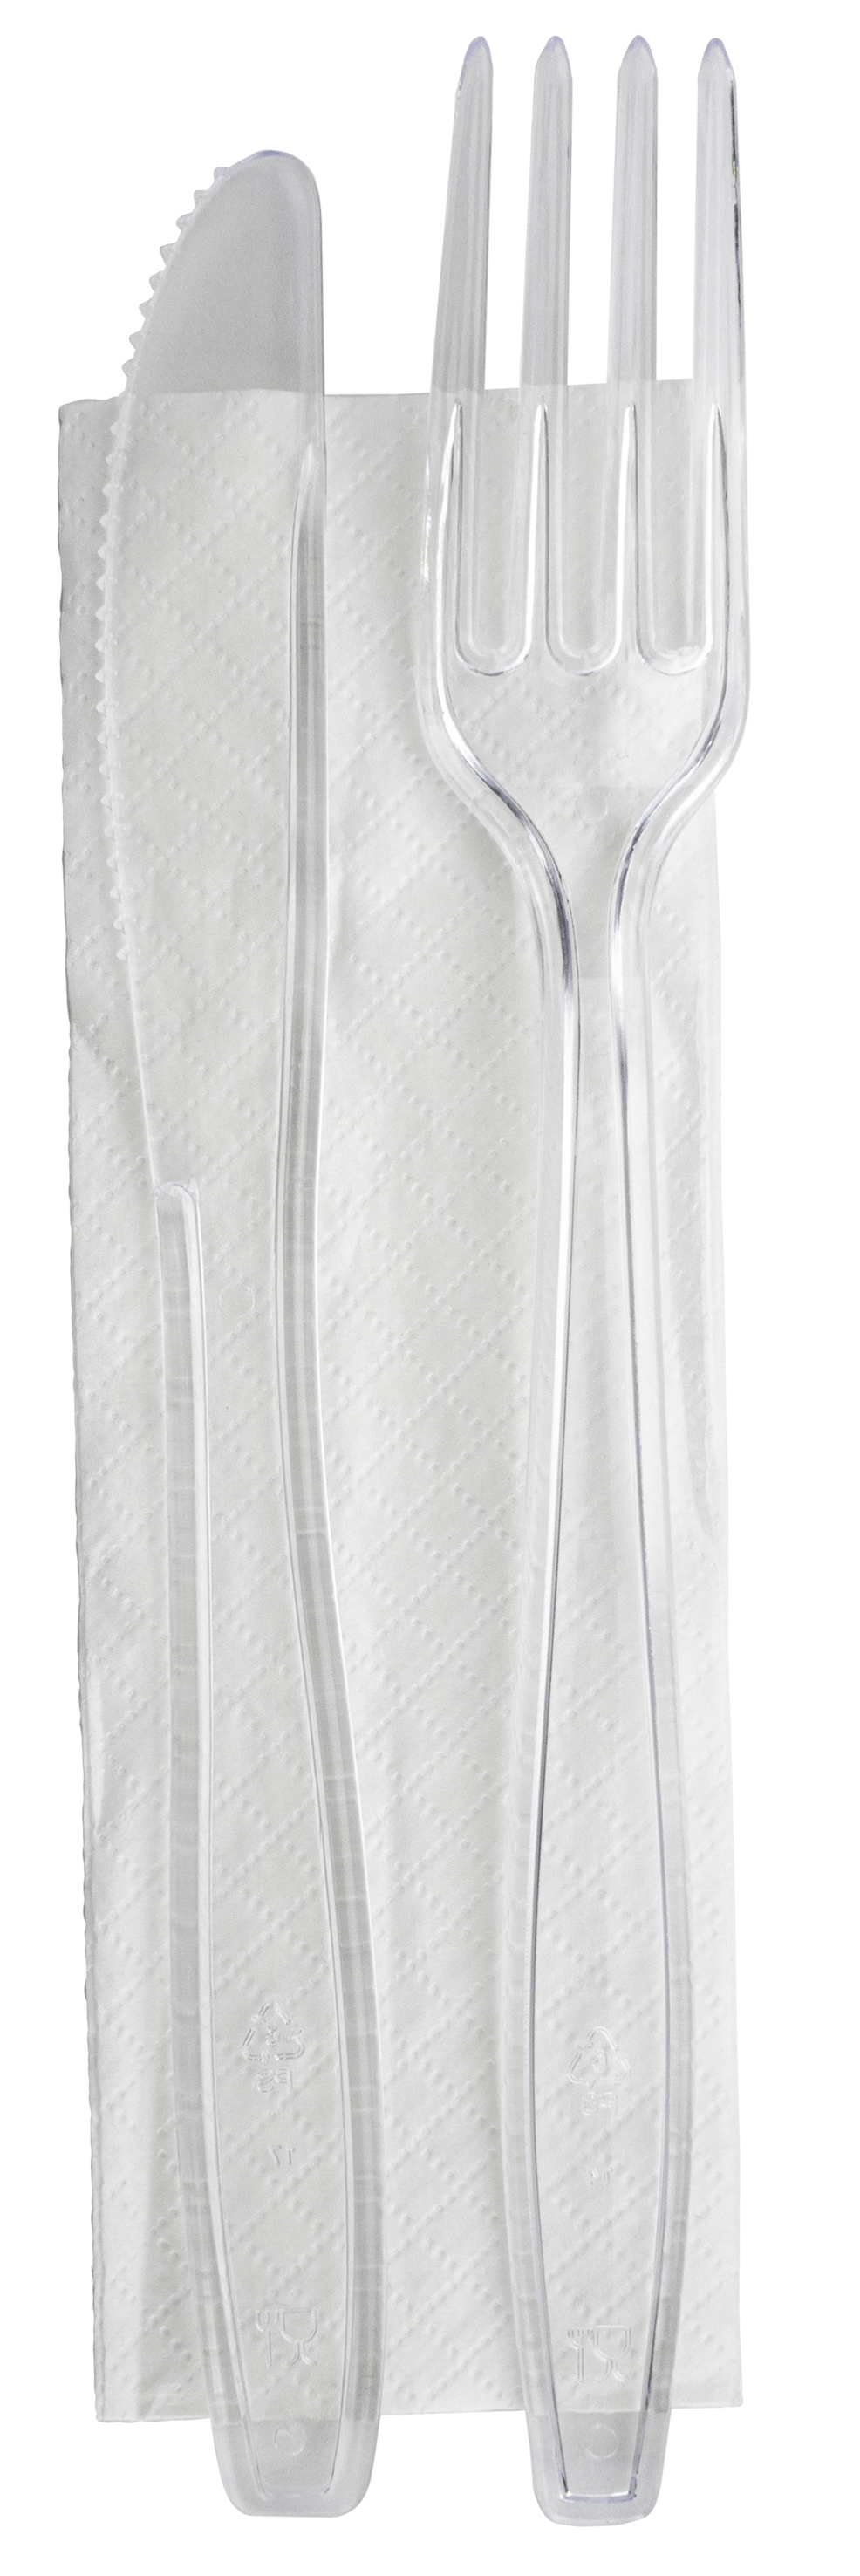 PS Einwegbesteck Serviette Weiß Gabel Messer 16 cm lang 250x Besteckset 